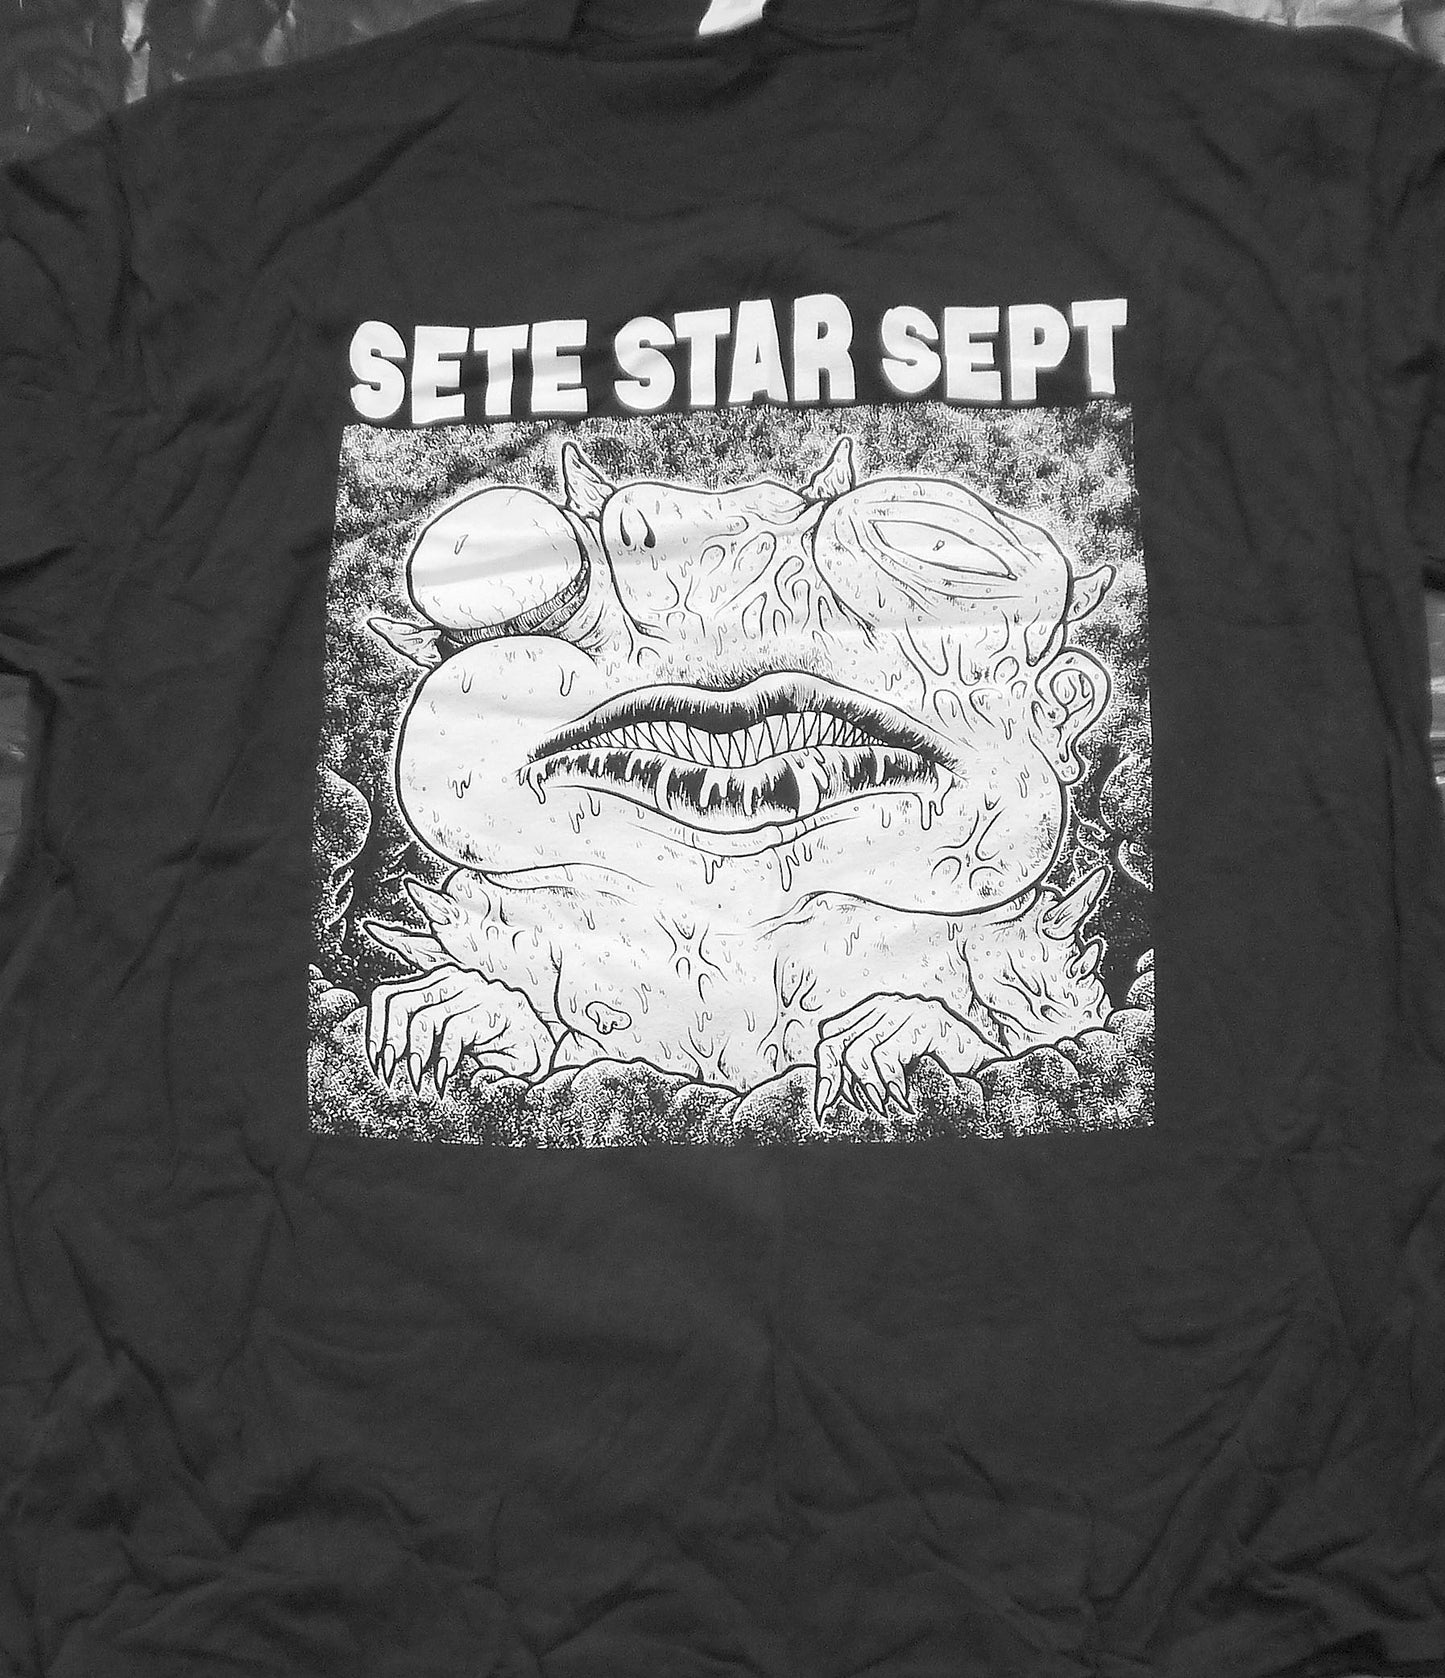 SETE STAR SEPT - T-shirt